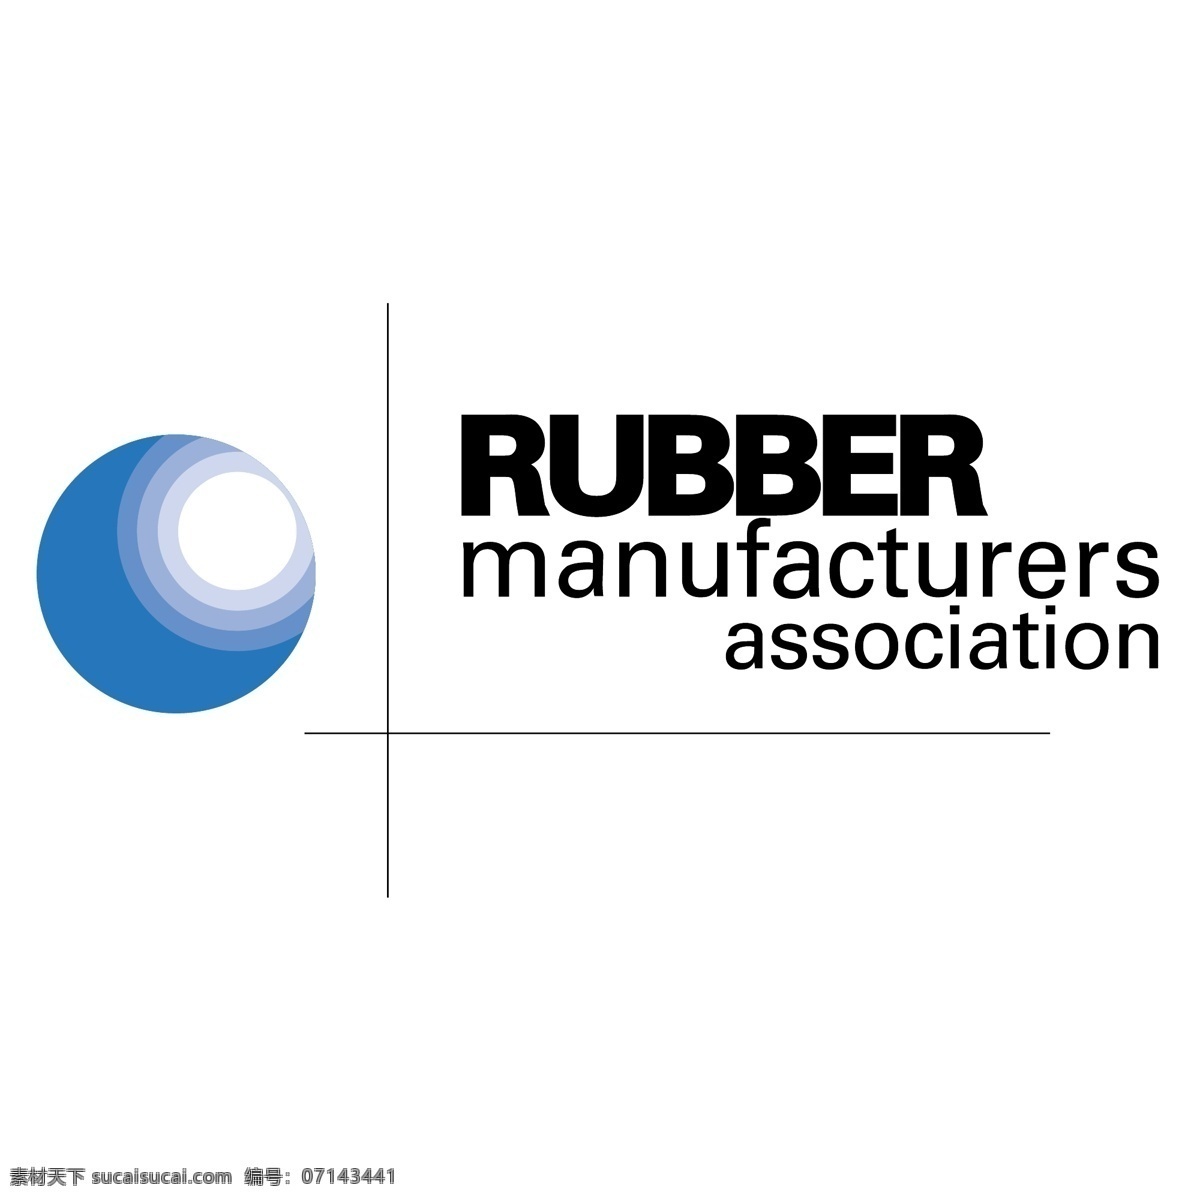 橡胶 制造商 协会 免费 标识 psd源文件 logo设计